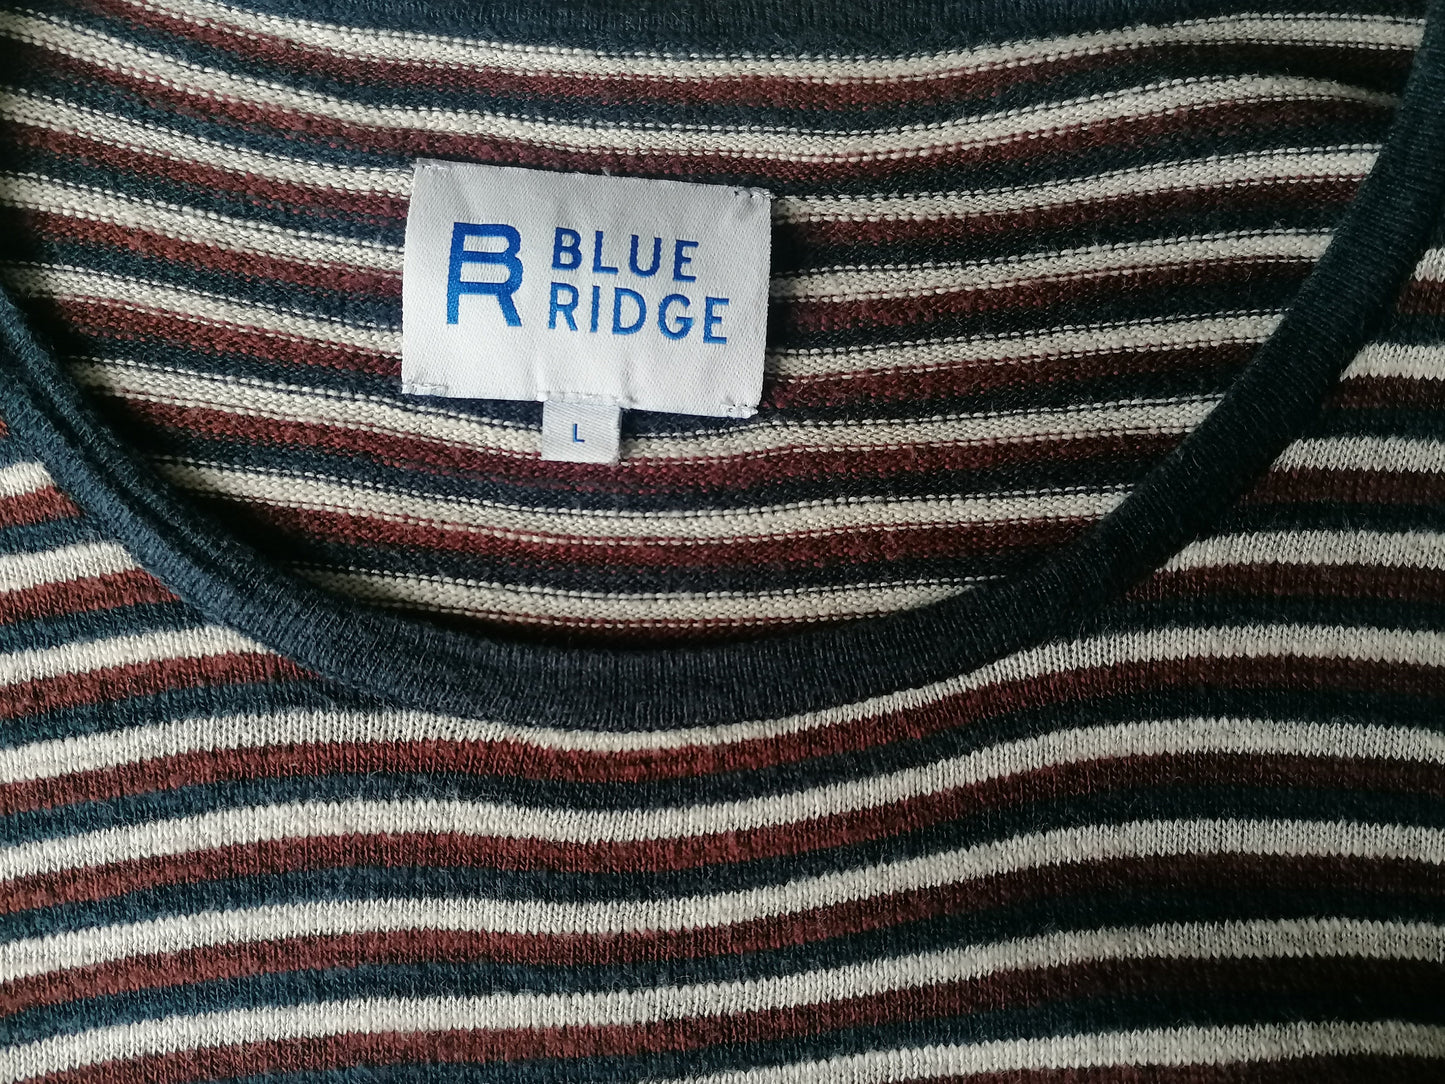 Blue Ridge dunne trui. Bruin Blauw Wit gestreept. Maat L.